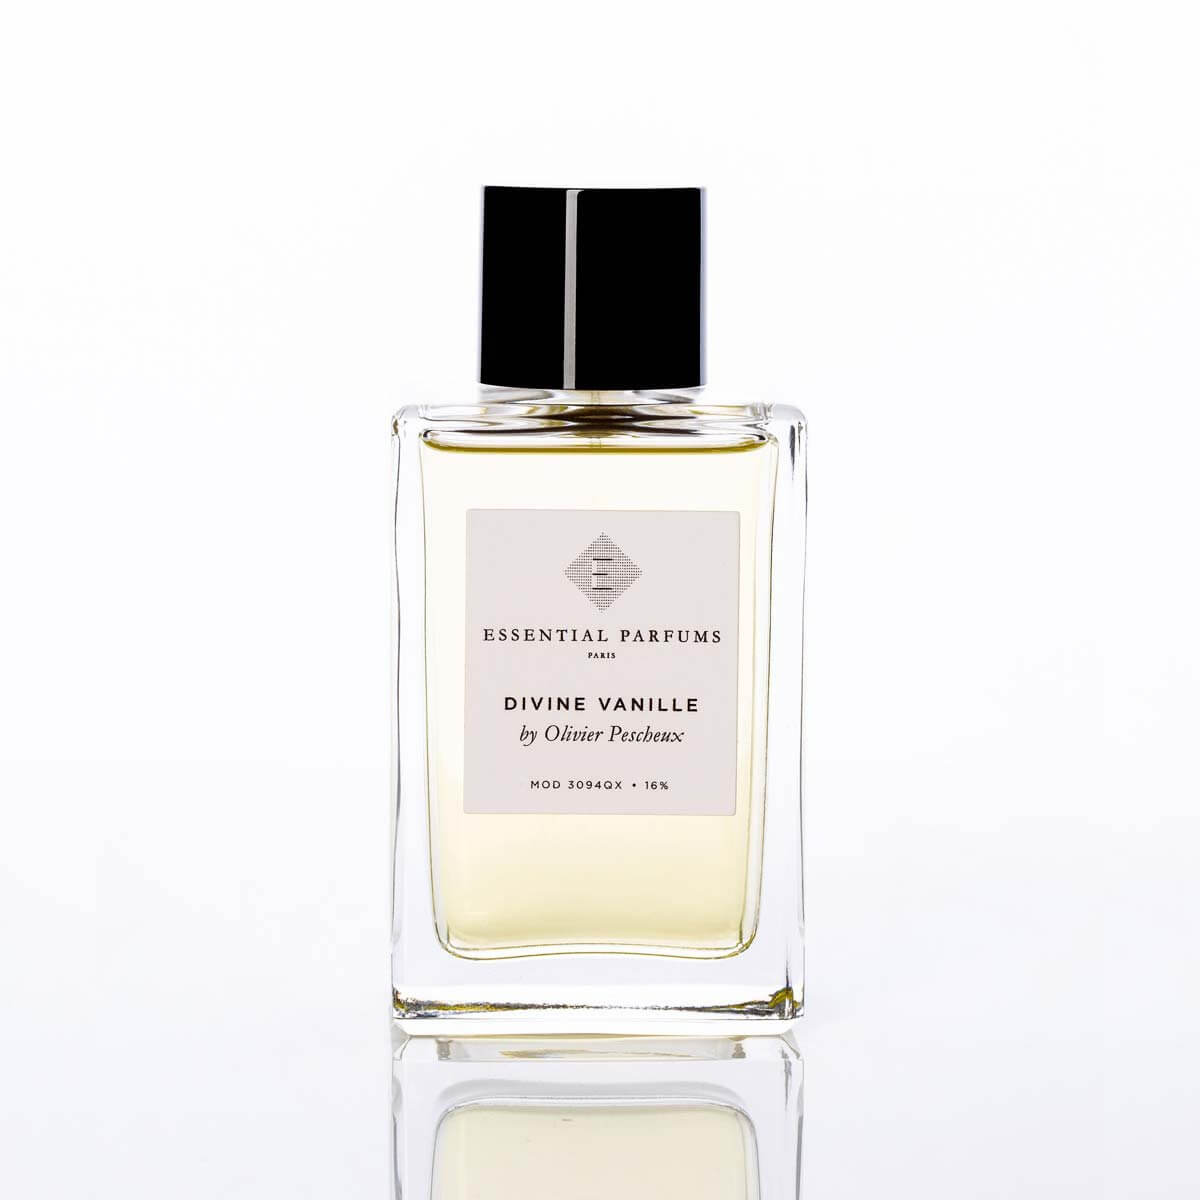 Divine Vanille by Essential Parfums at Indigo Perfumery